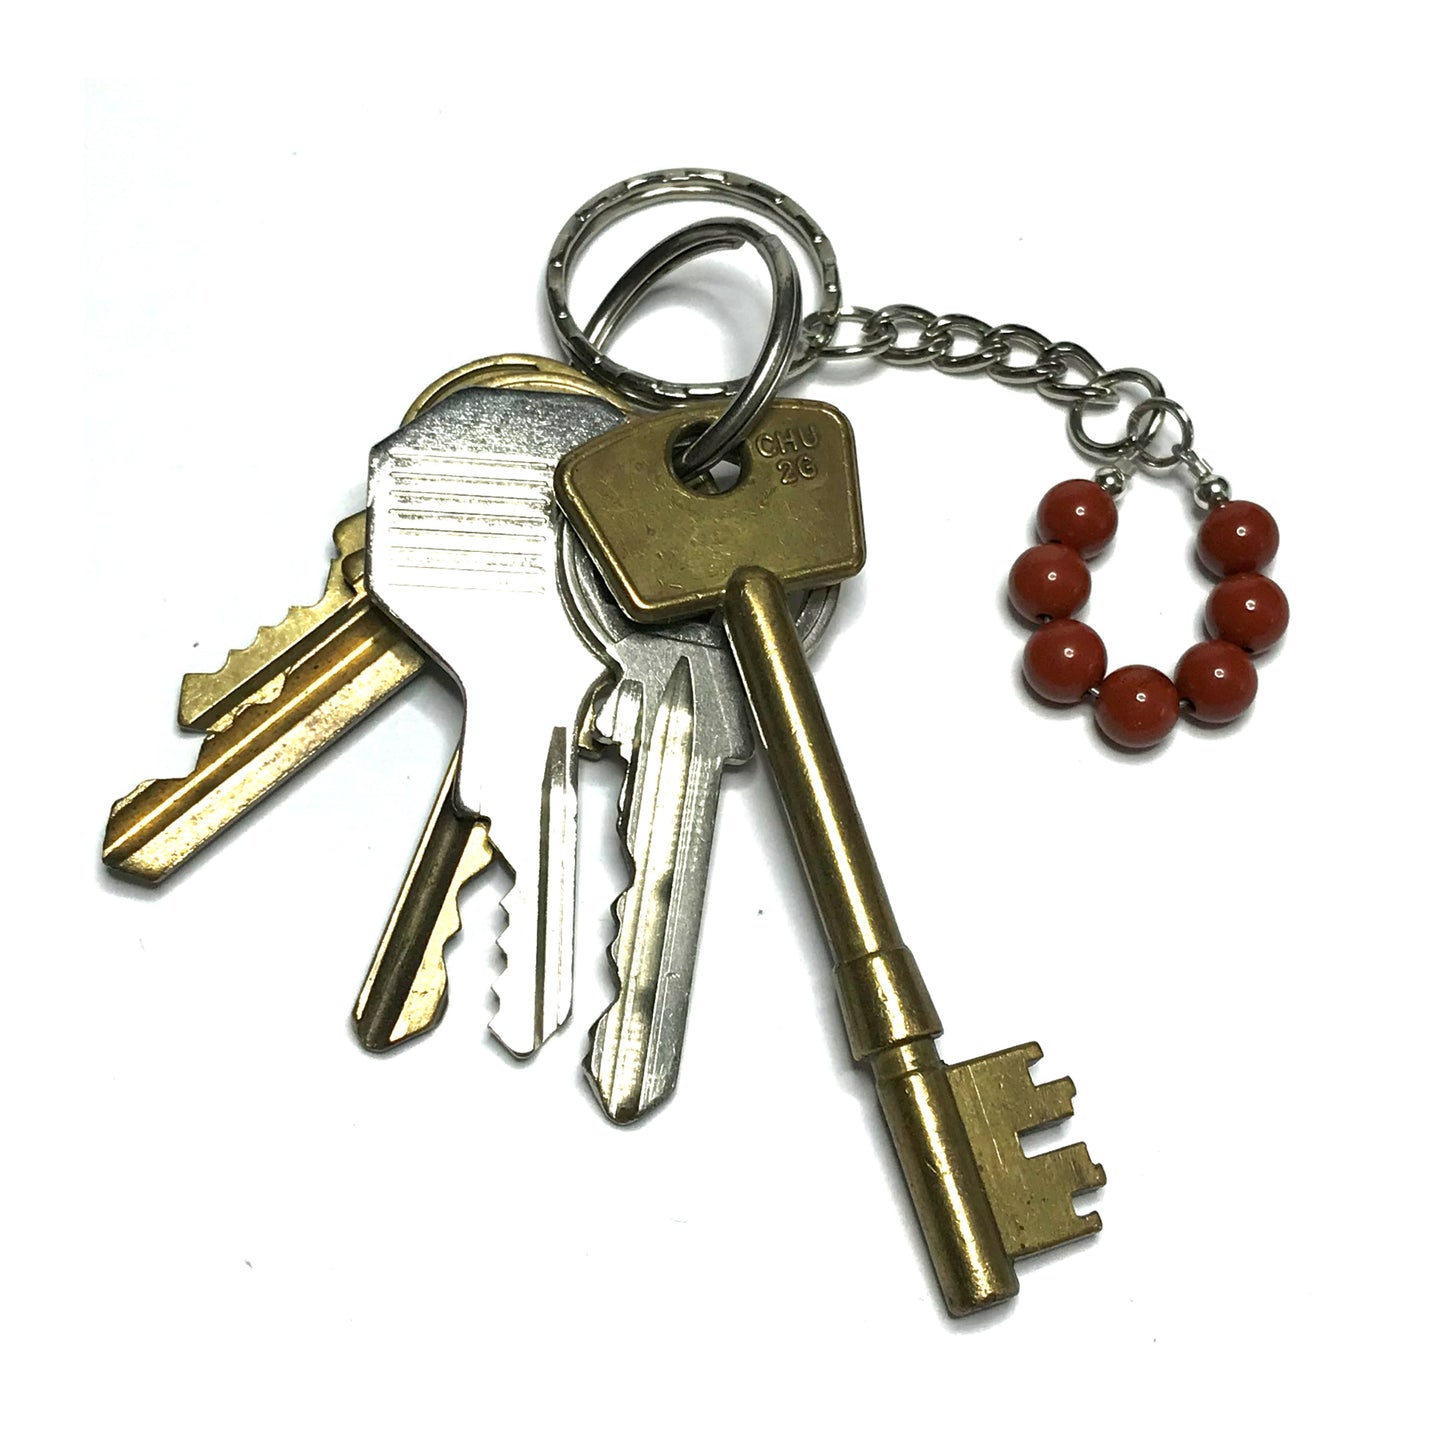 Red jasper bead keychain with keys